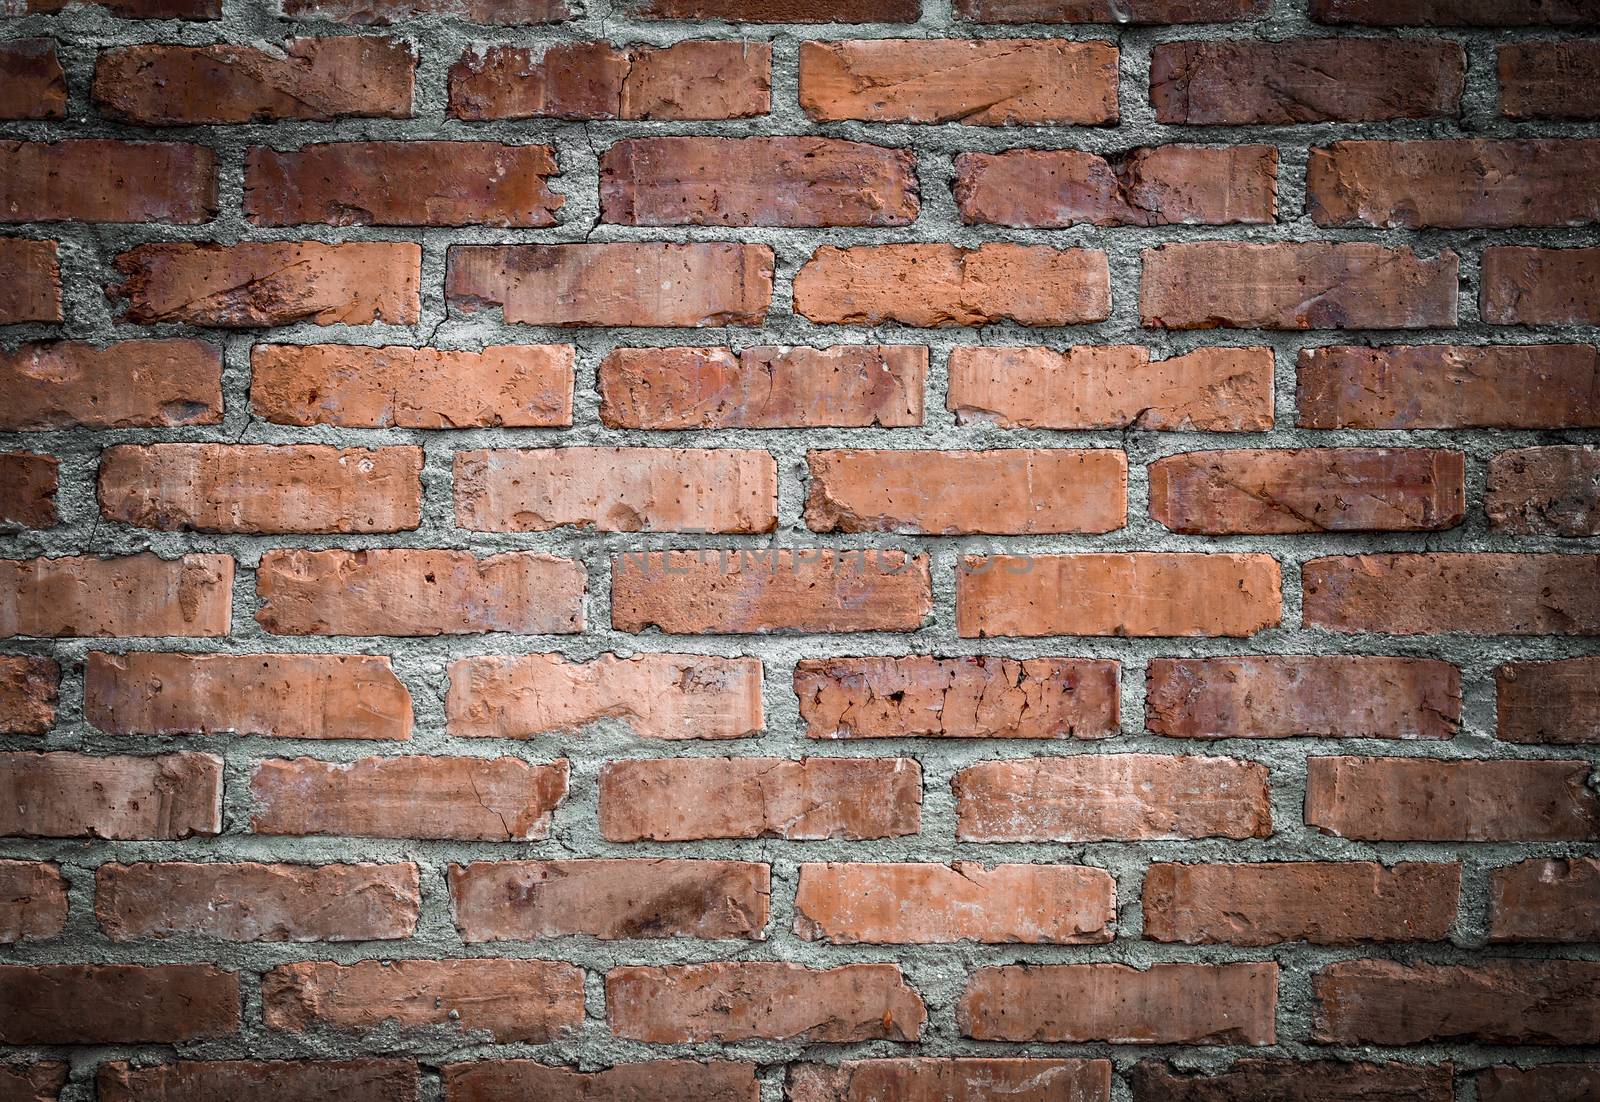 Orange old worn brick wall texture background. Vintage effect.